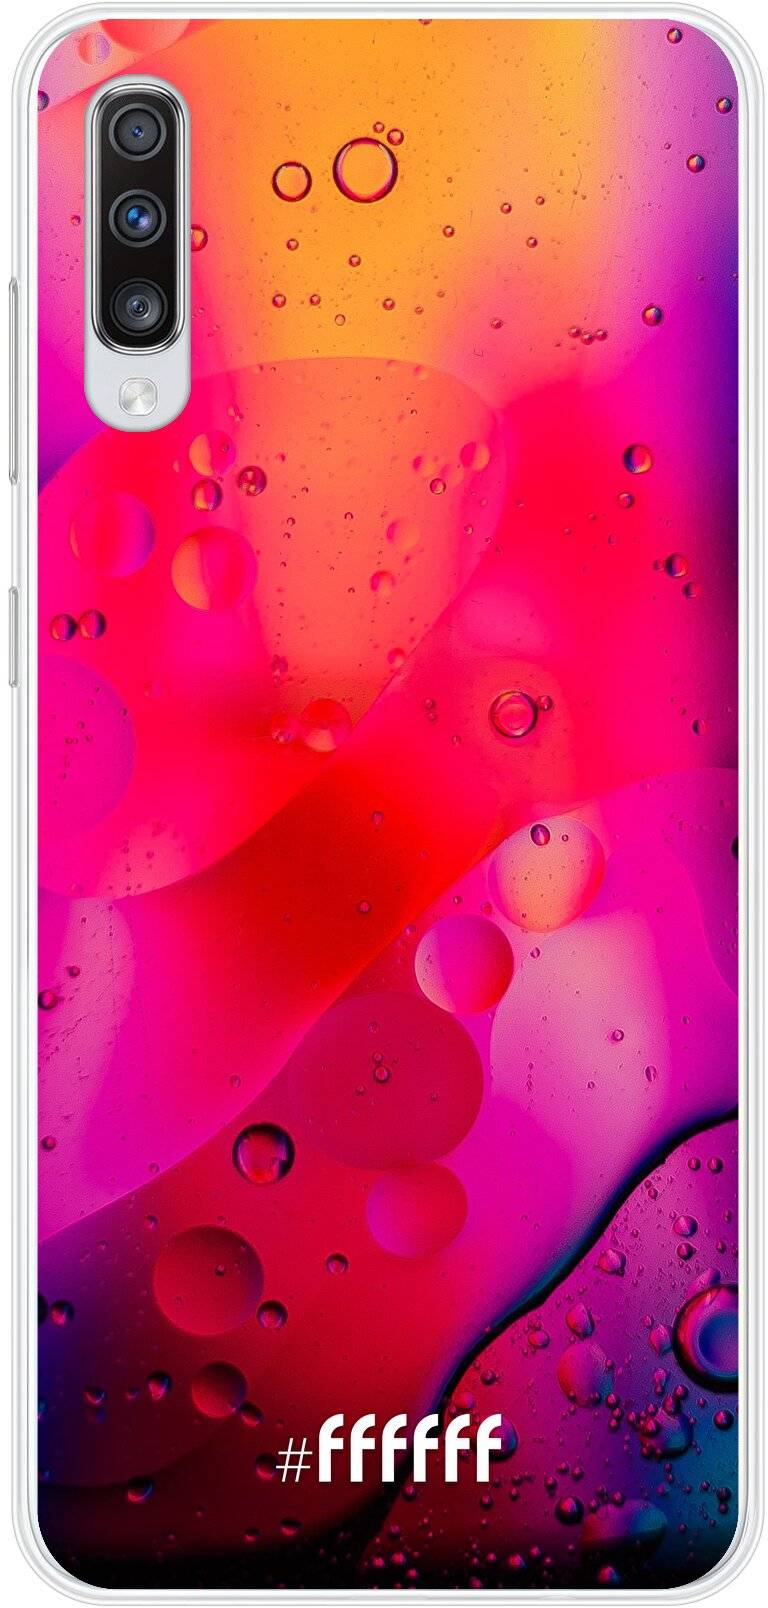 Colour Bokeh Galaxy A70